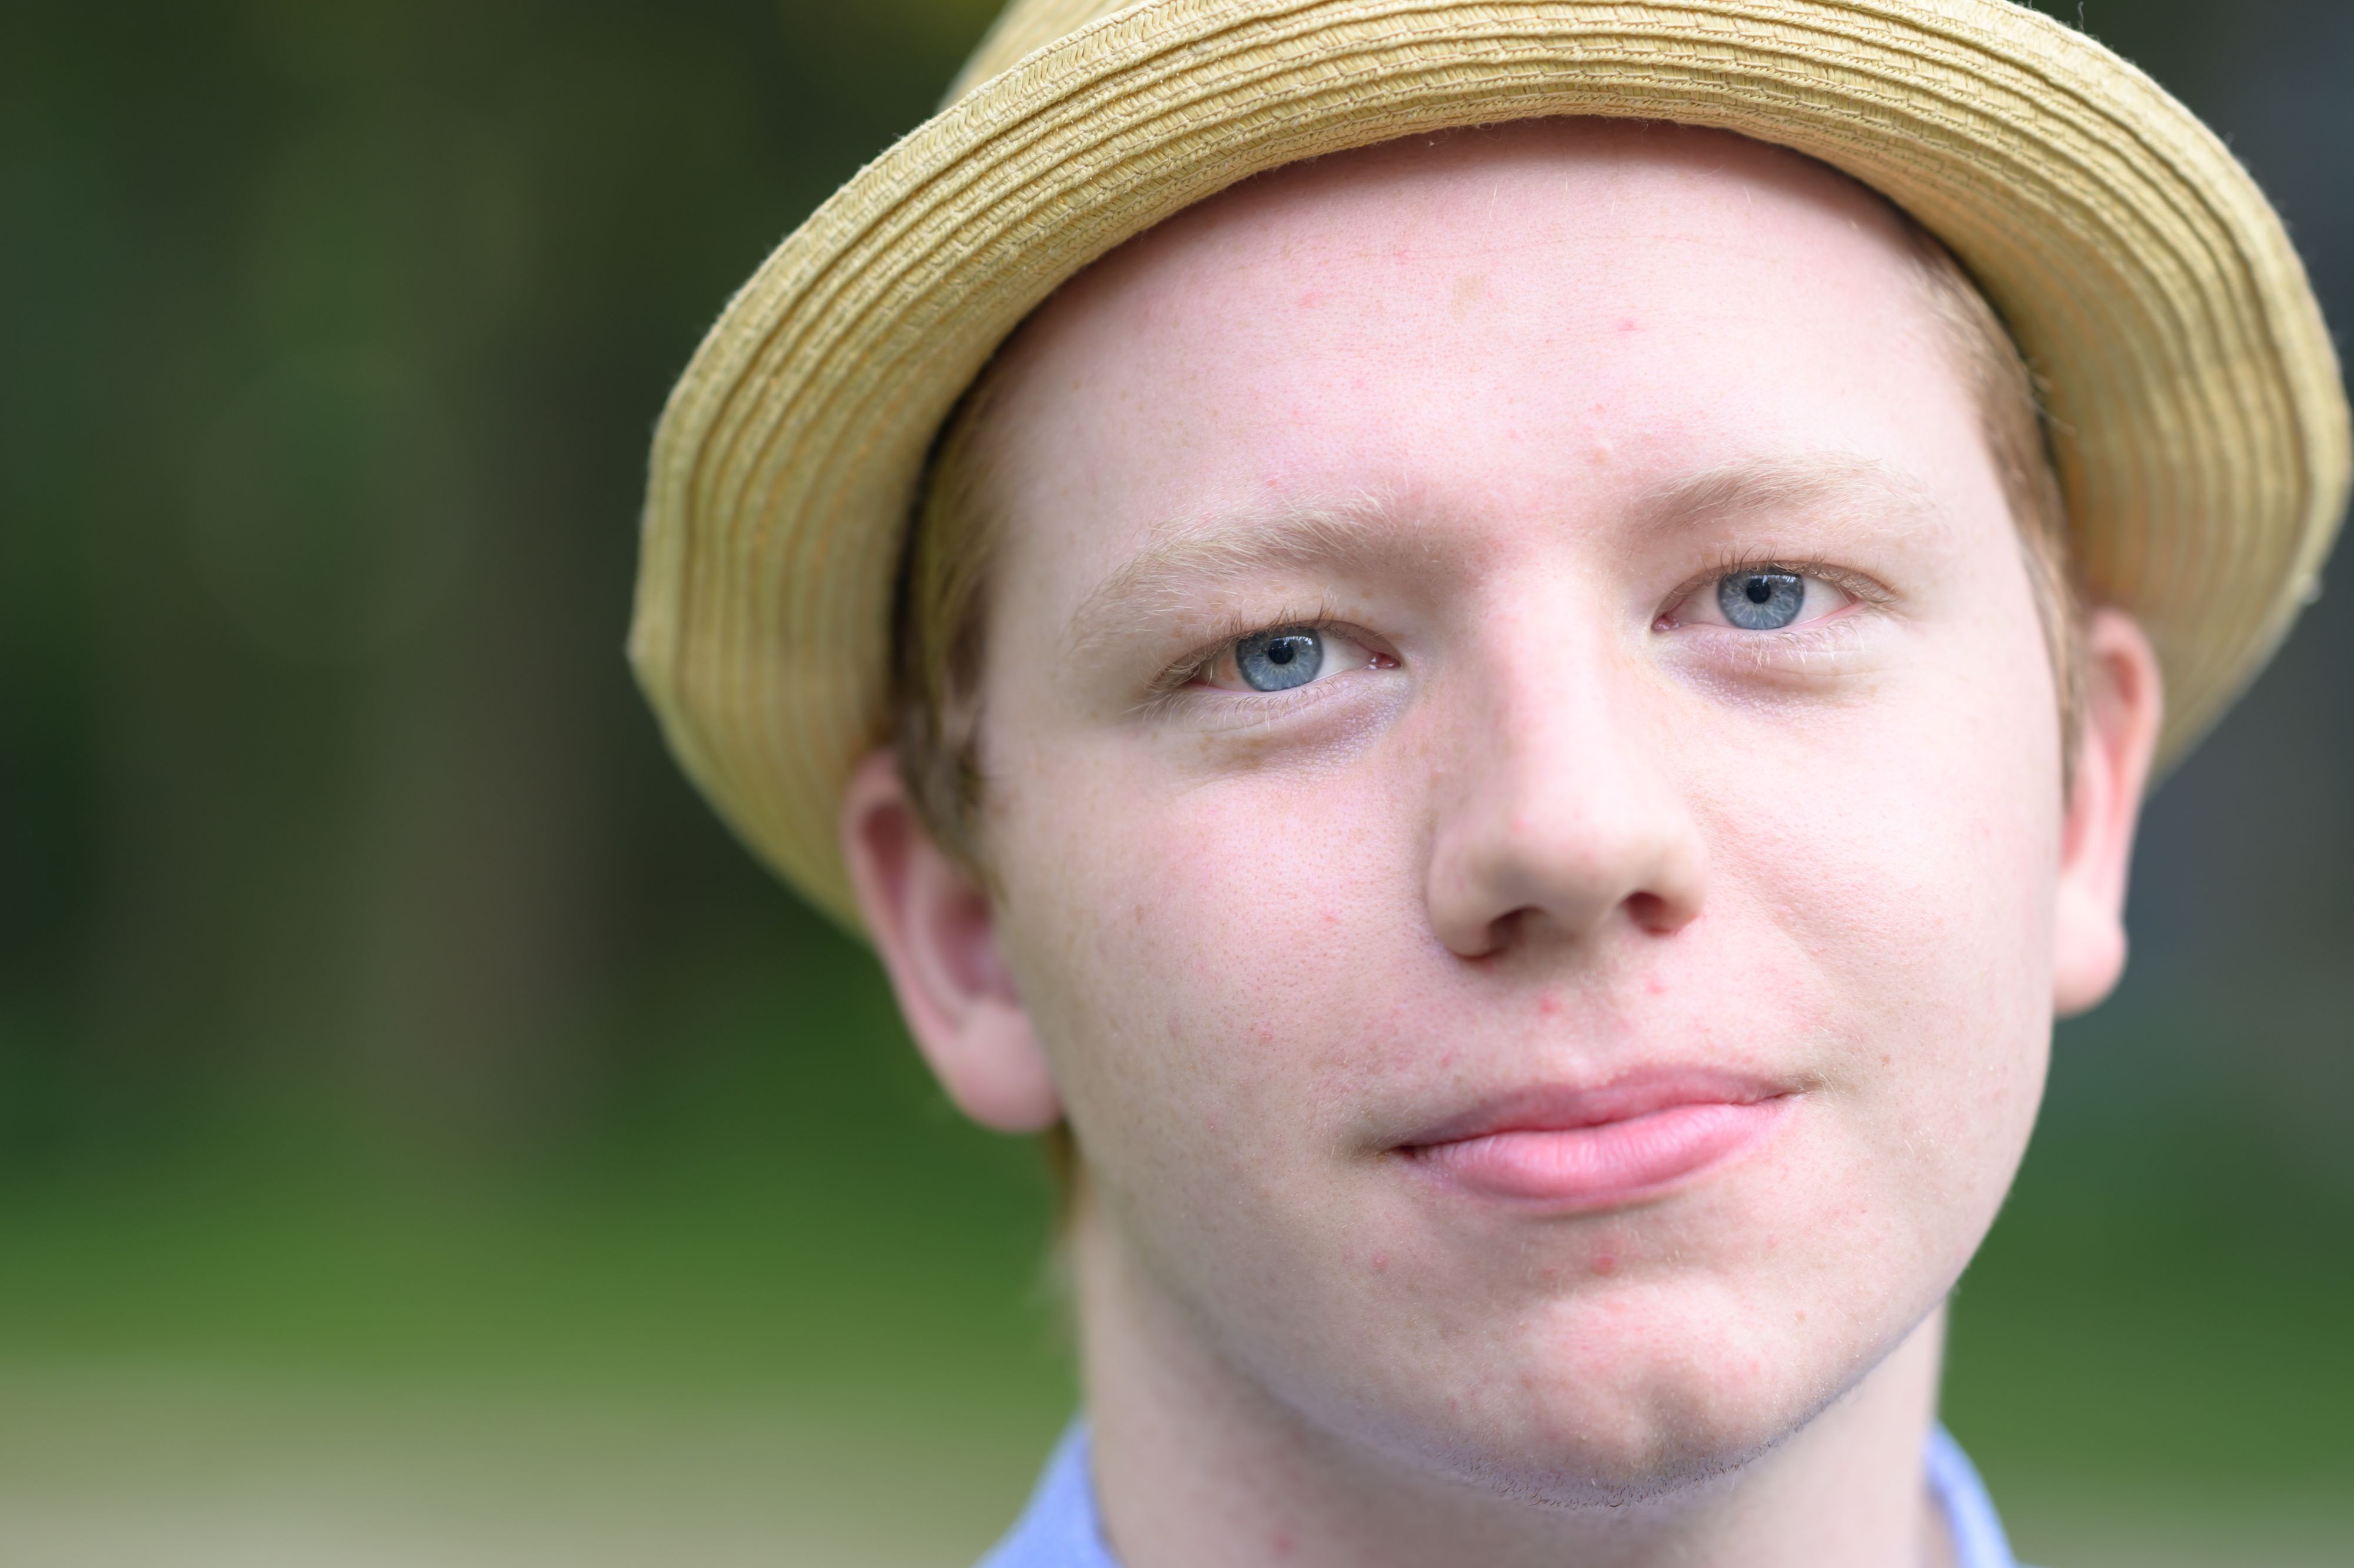 Closeup outdoor portrait of boy in hat